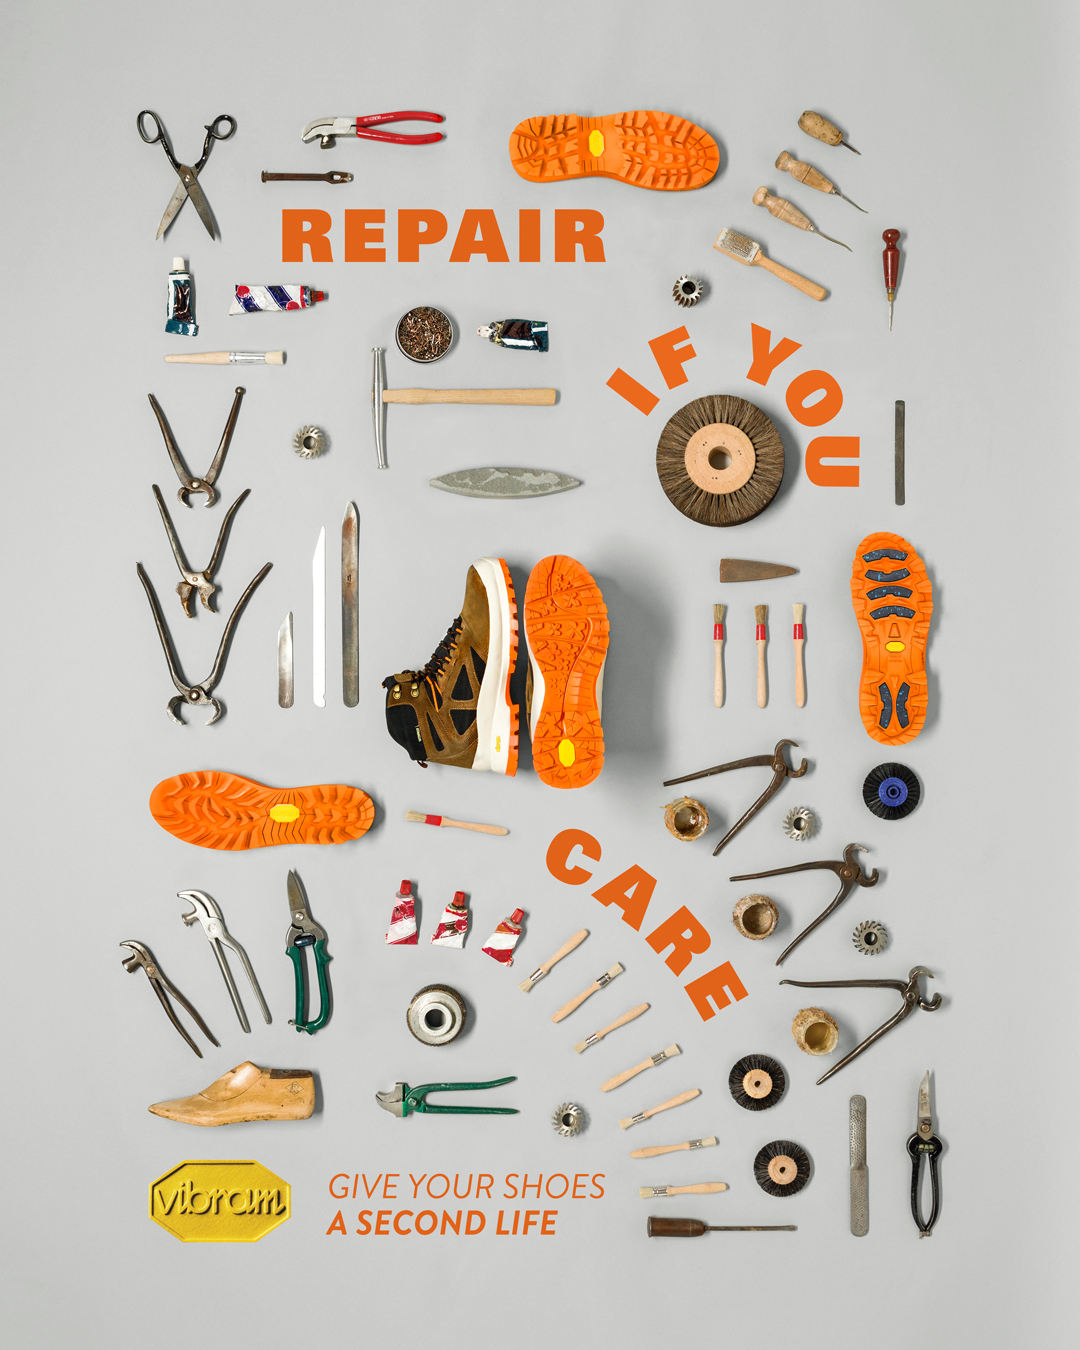 repair if you care